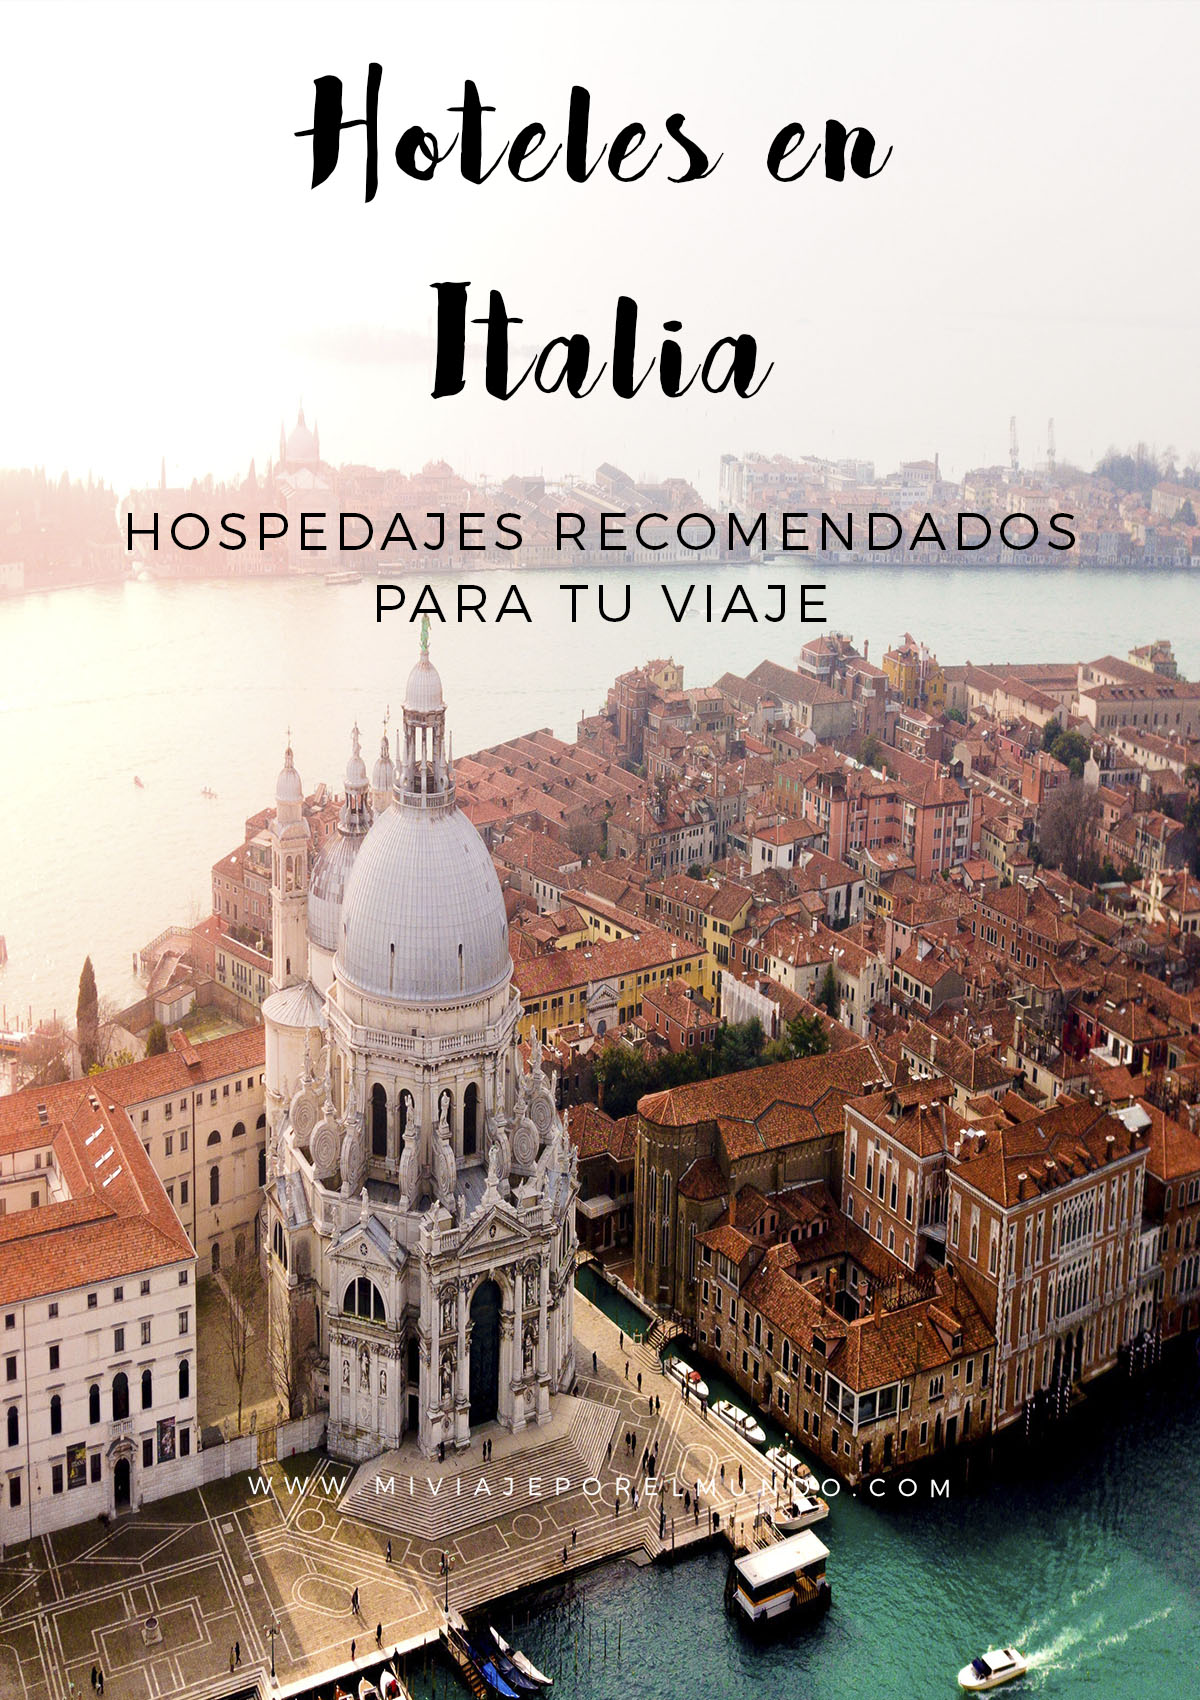 hoteles recomendados en italia